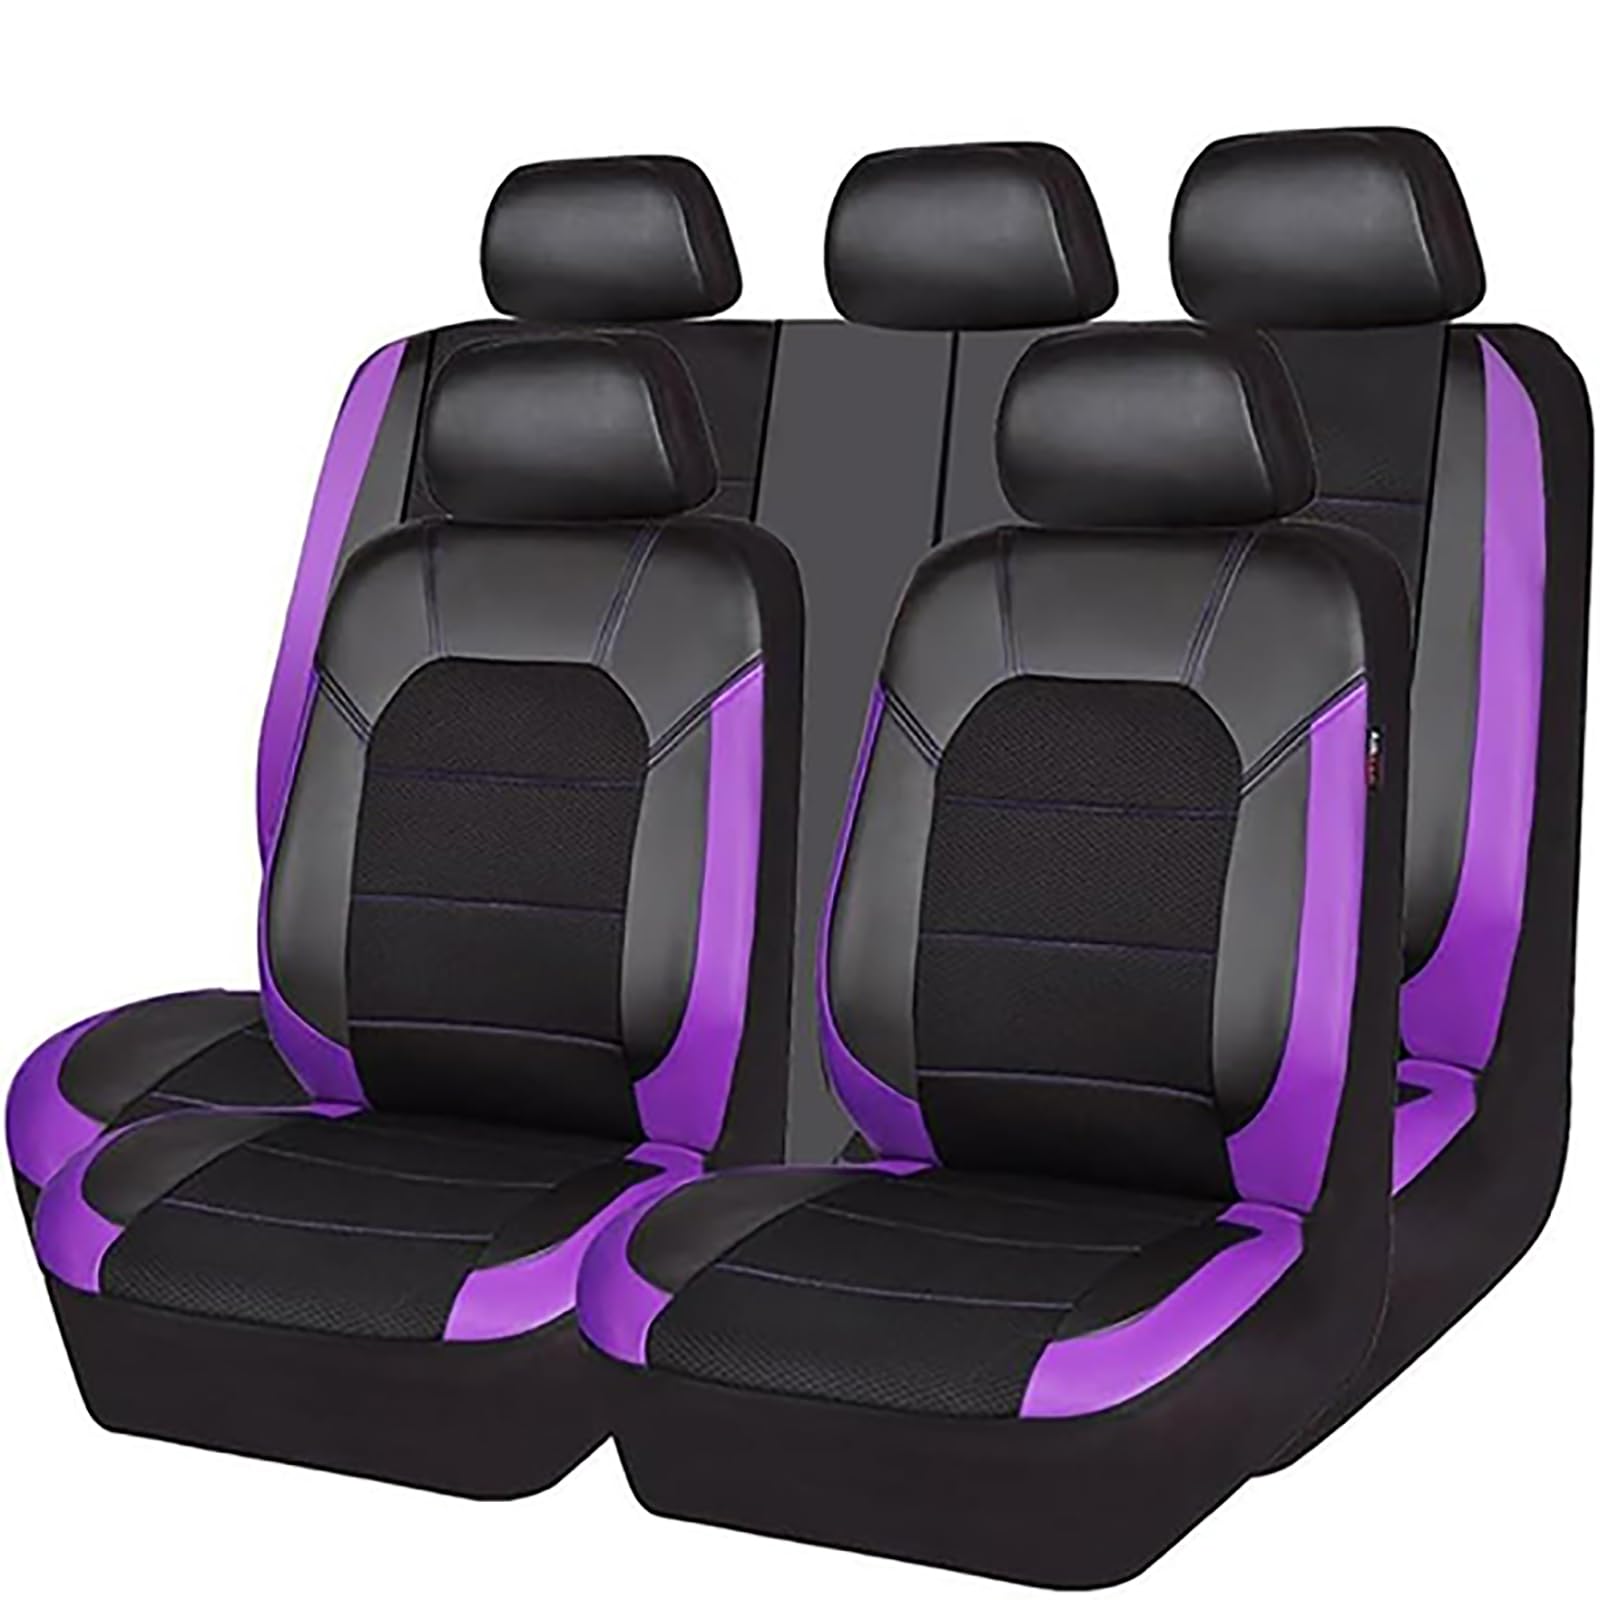 EYHQKRTR Auto Leder Sitzkissen Für VW Golf 8 7 6 5 4 3 R GTE/GTI/GTD/Clubsport 45, 5 Sitzer Full Set SitzbezüGe Schonbezug Vorne Rückbank Sitzschutz Compatible Airbag Innenraum Zubehör,E/Purple von EYHQKRTR